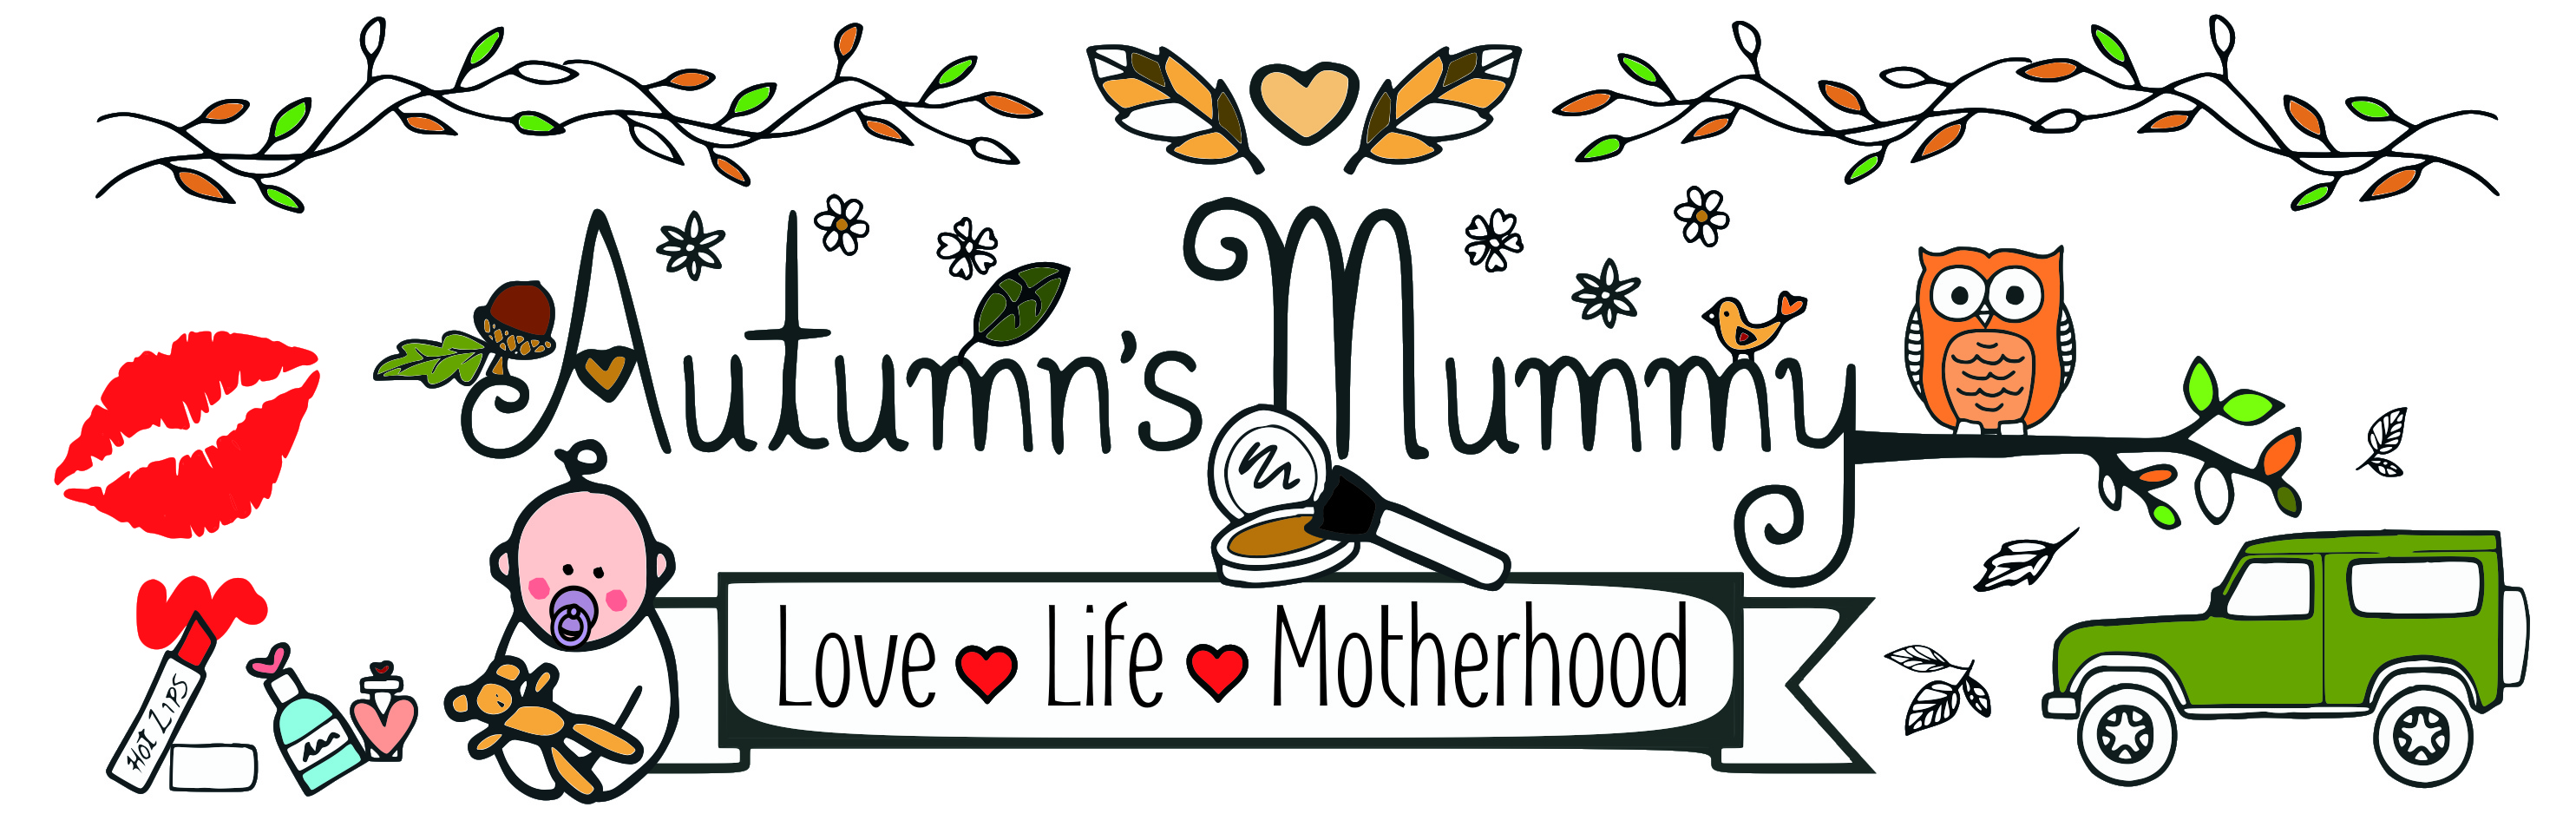 Autumn's Mummy